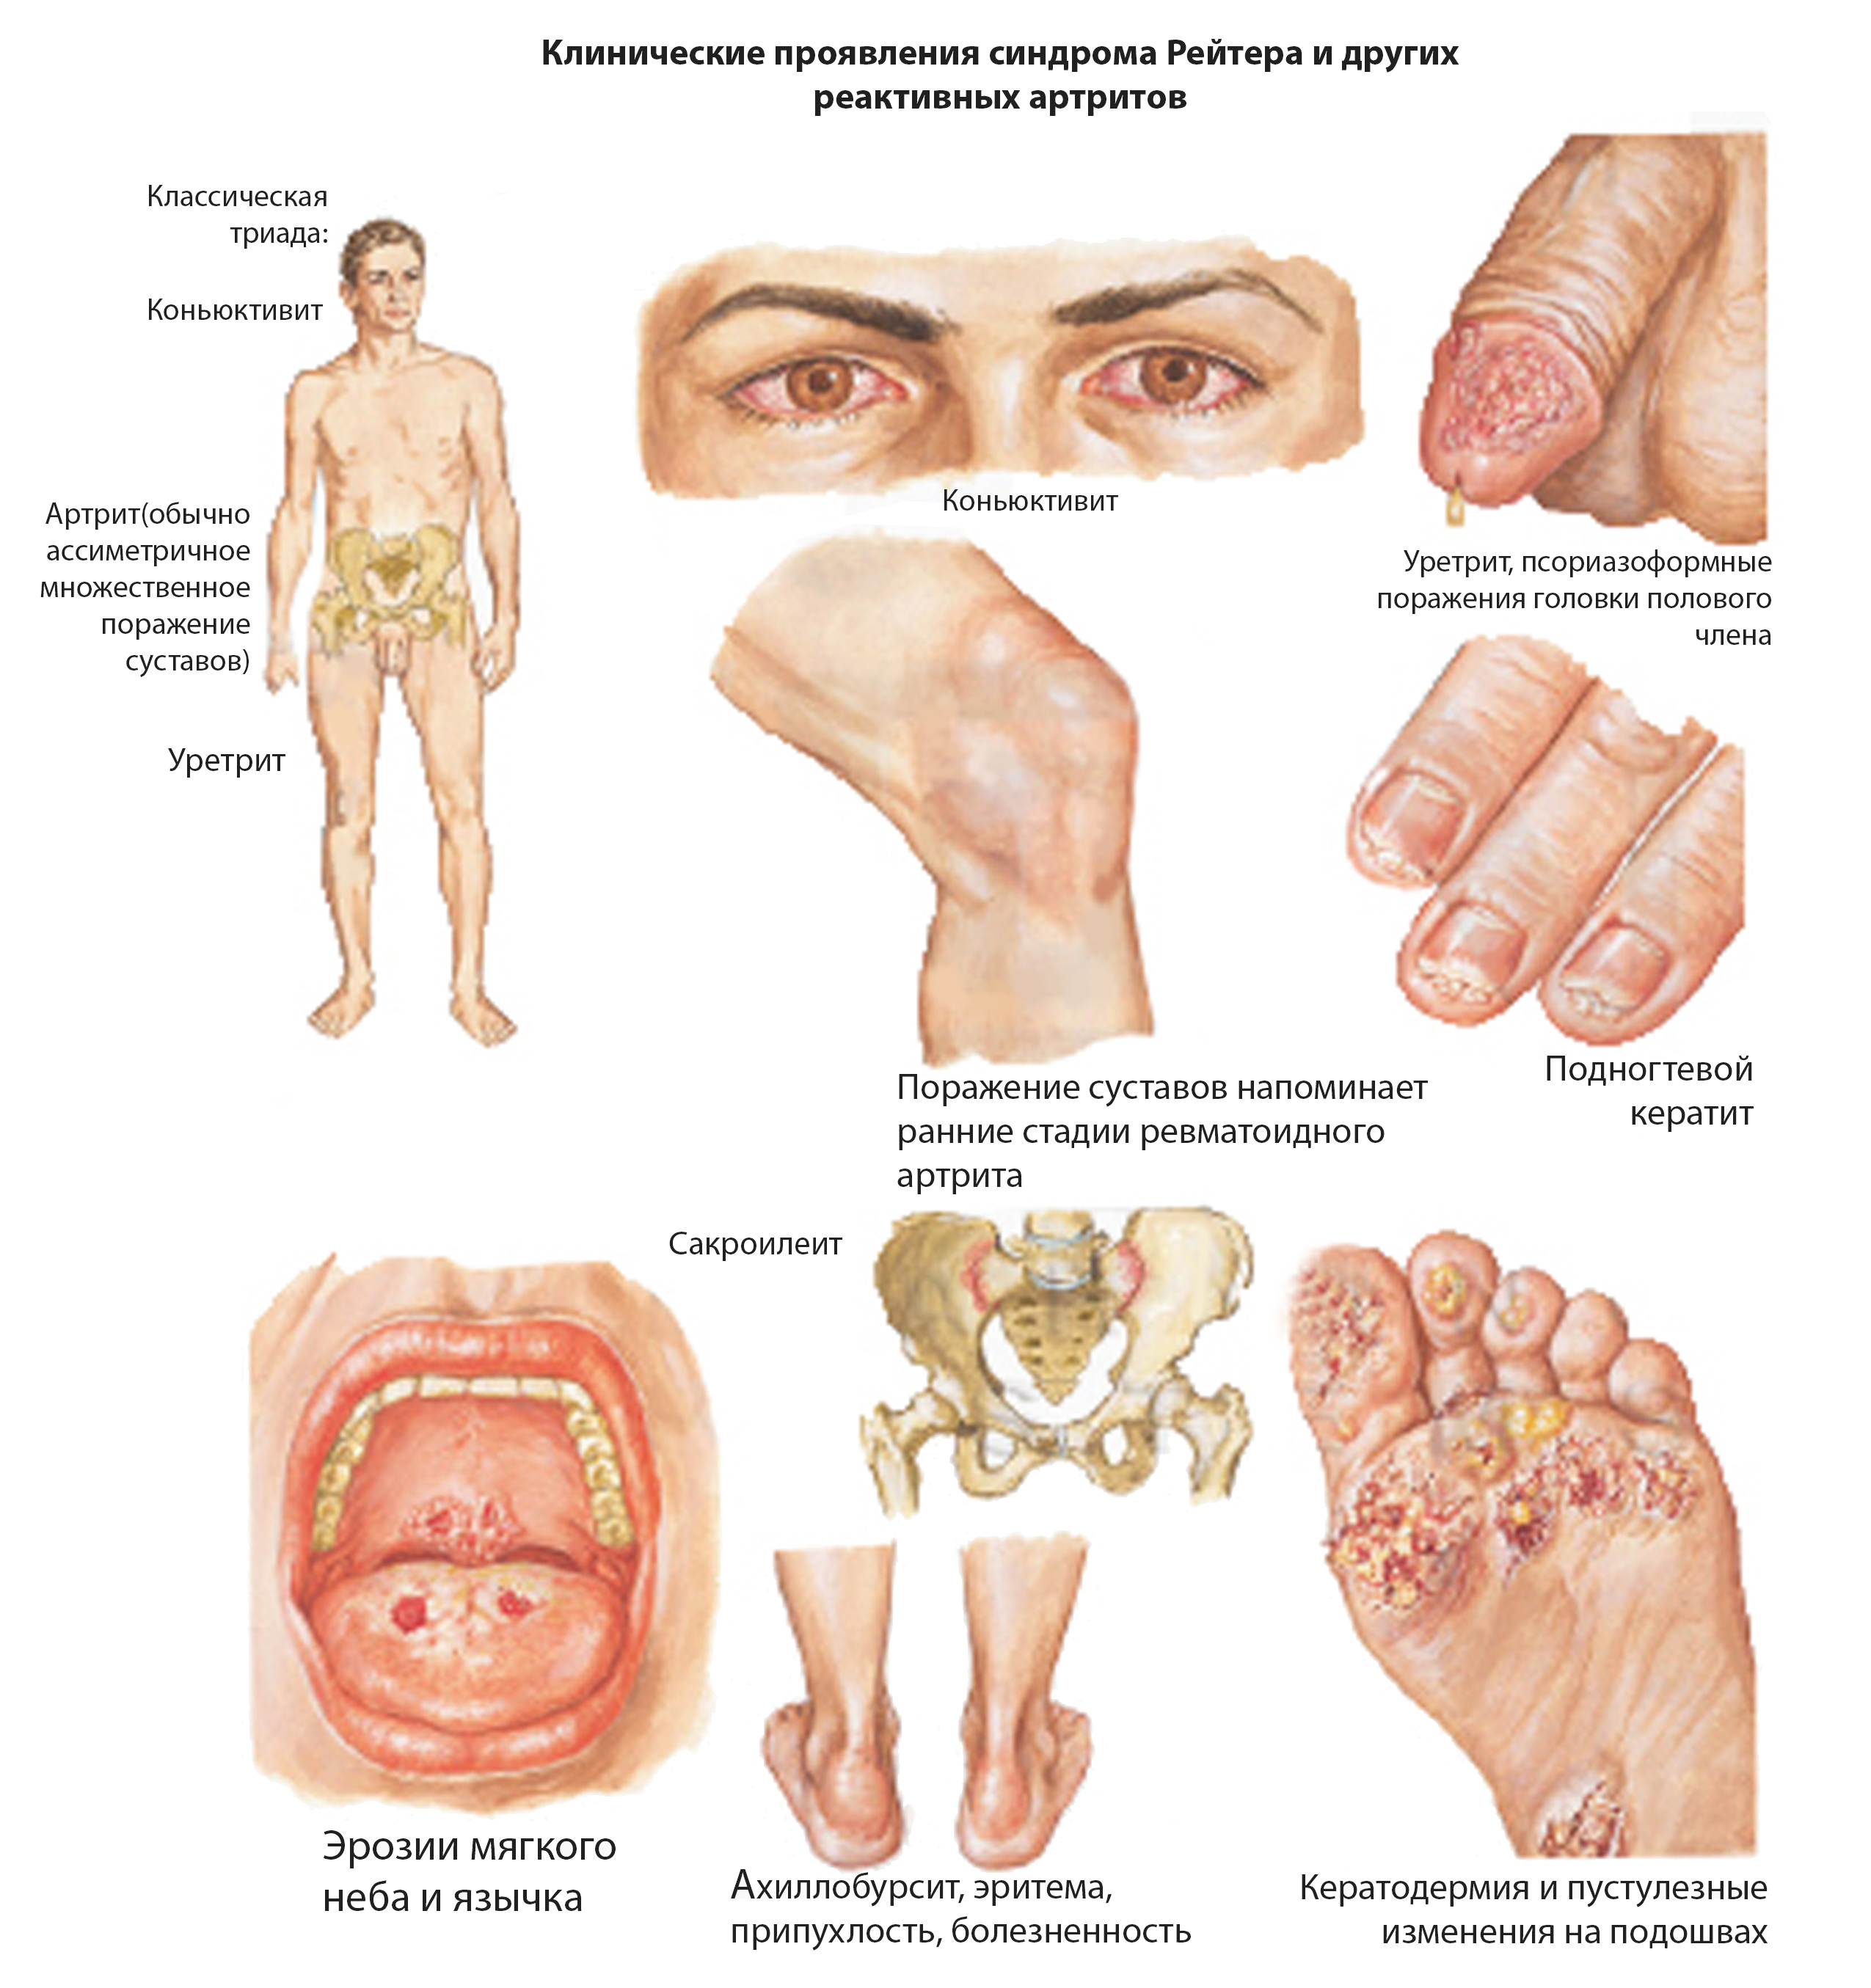 Ревматический артрит симптомы лечение